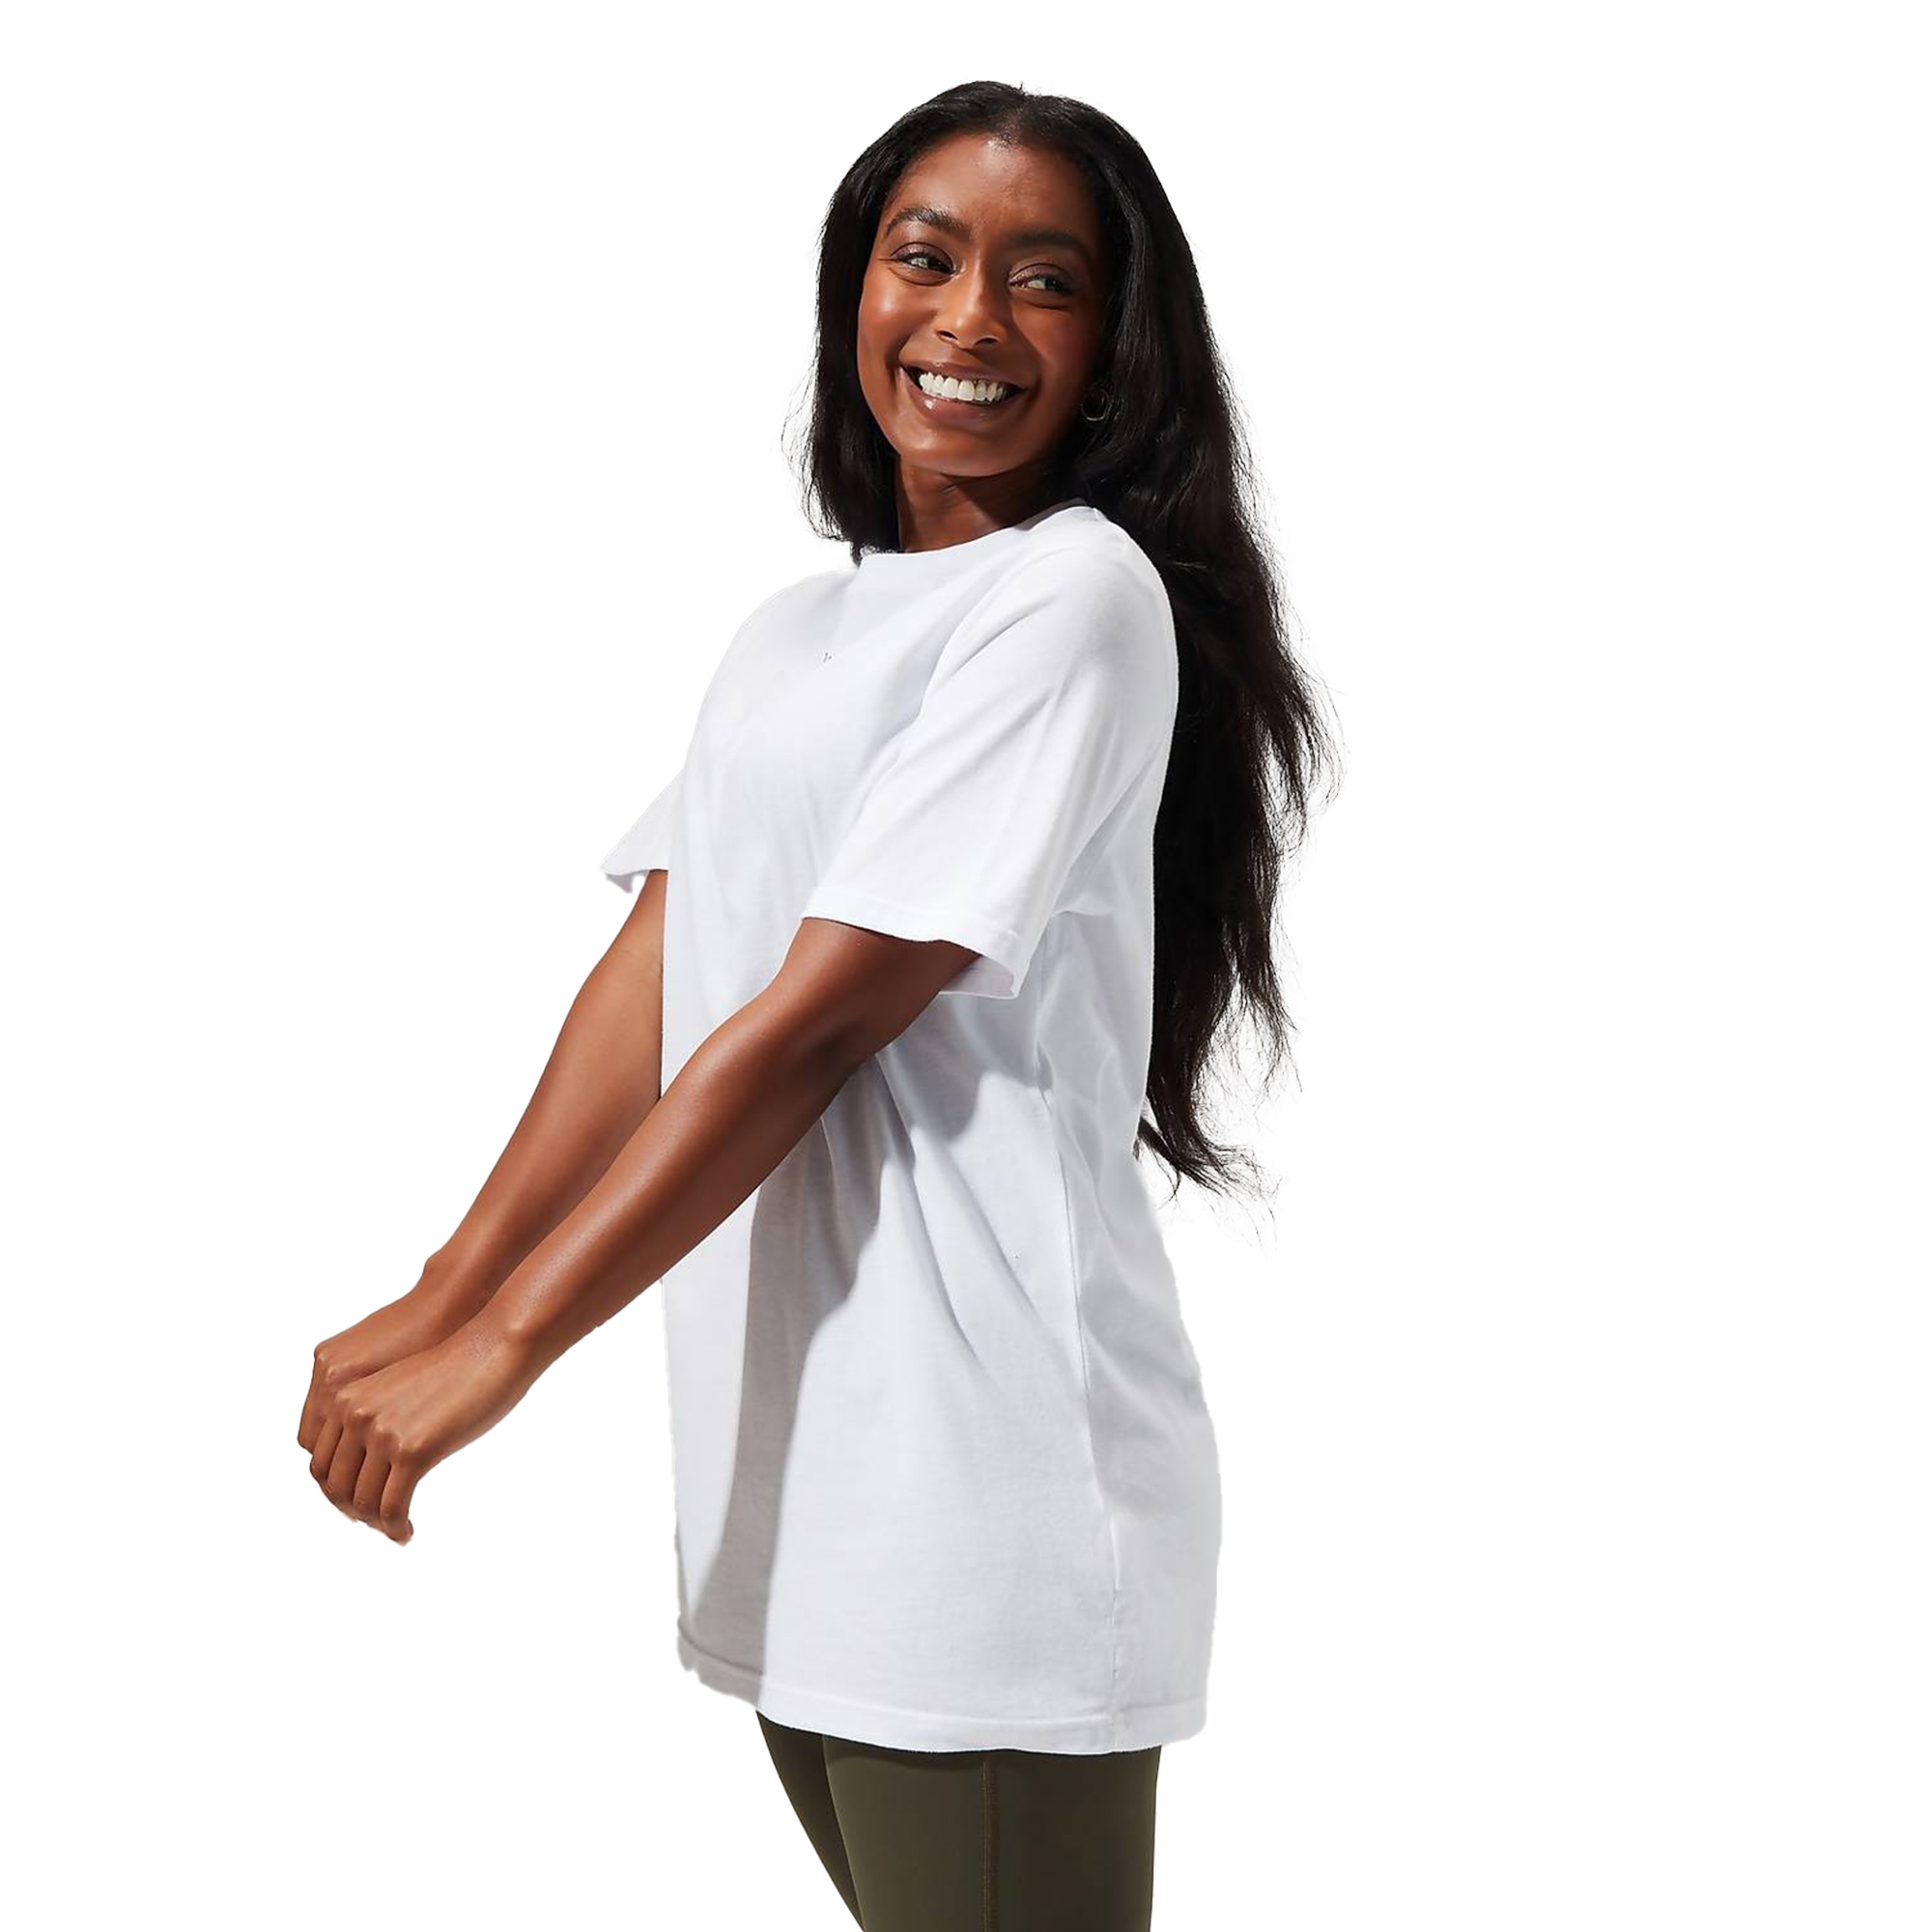 Berghaus Boyfriend Logo Women's T-Shirt